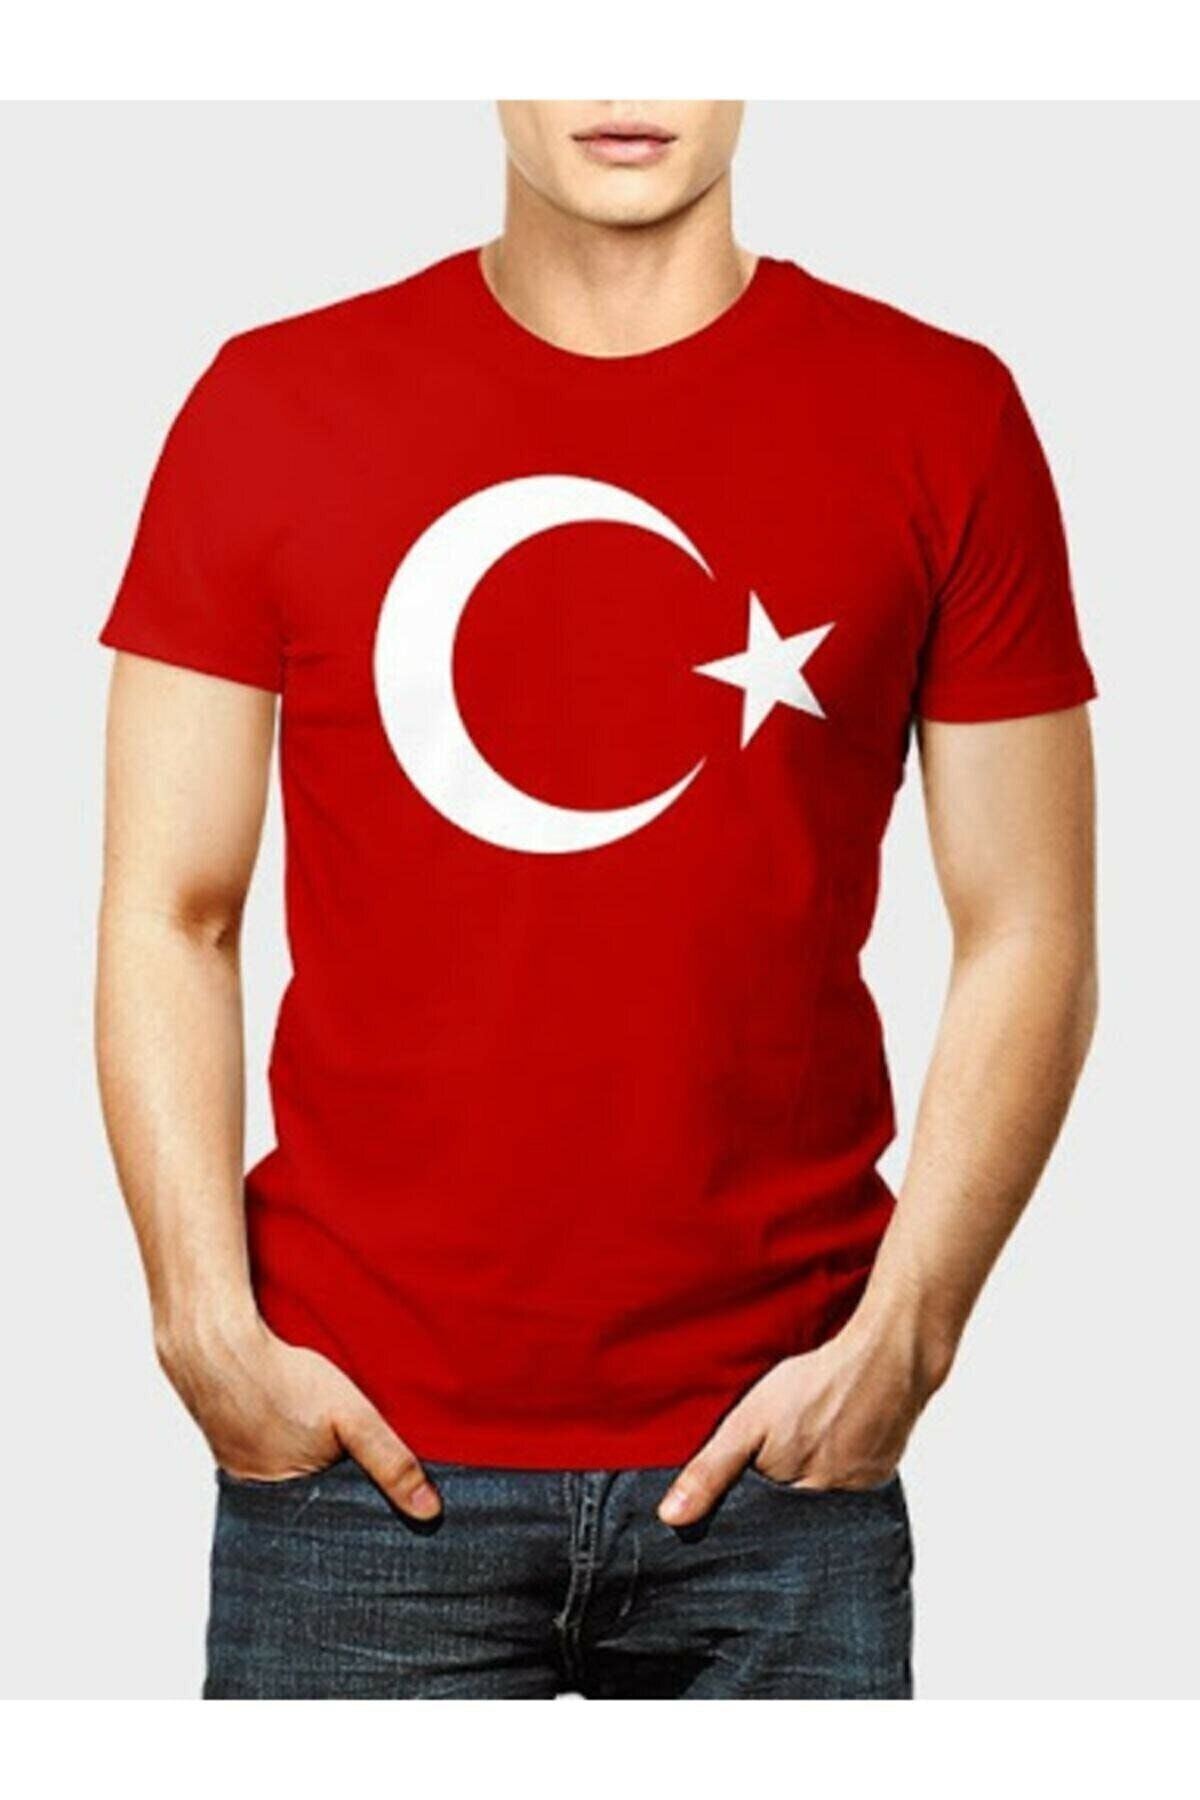 Dragora Unısex Çocuk Ay Yıldızlı Bayrak Baskılı Likralı Süper Compac Penye Kırmızı T-shirt